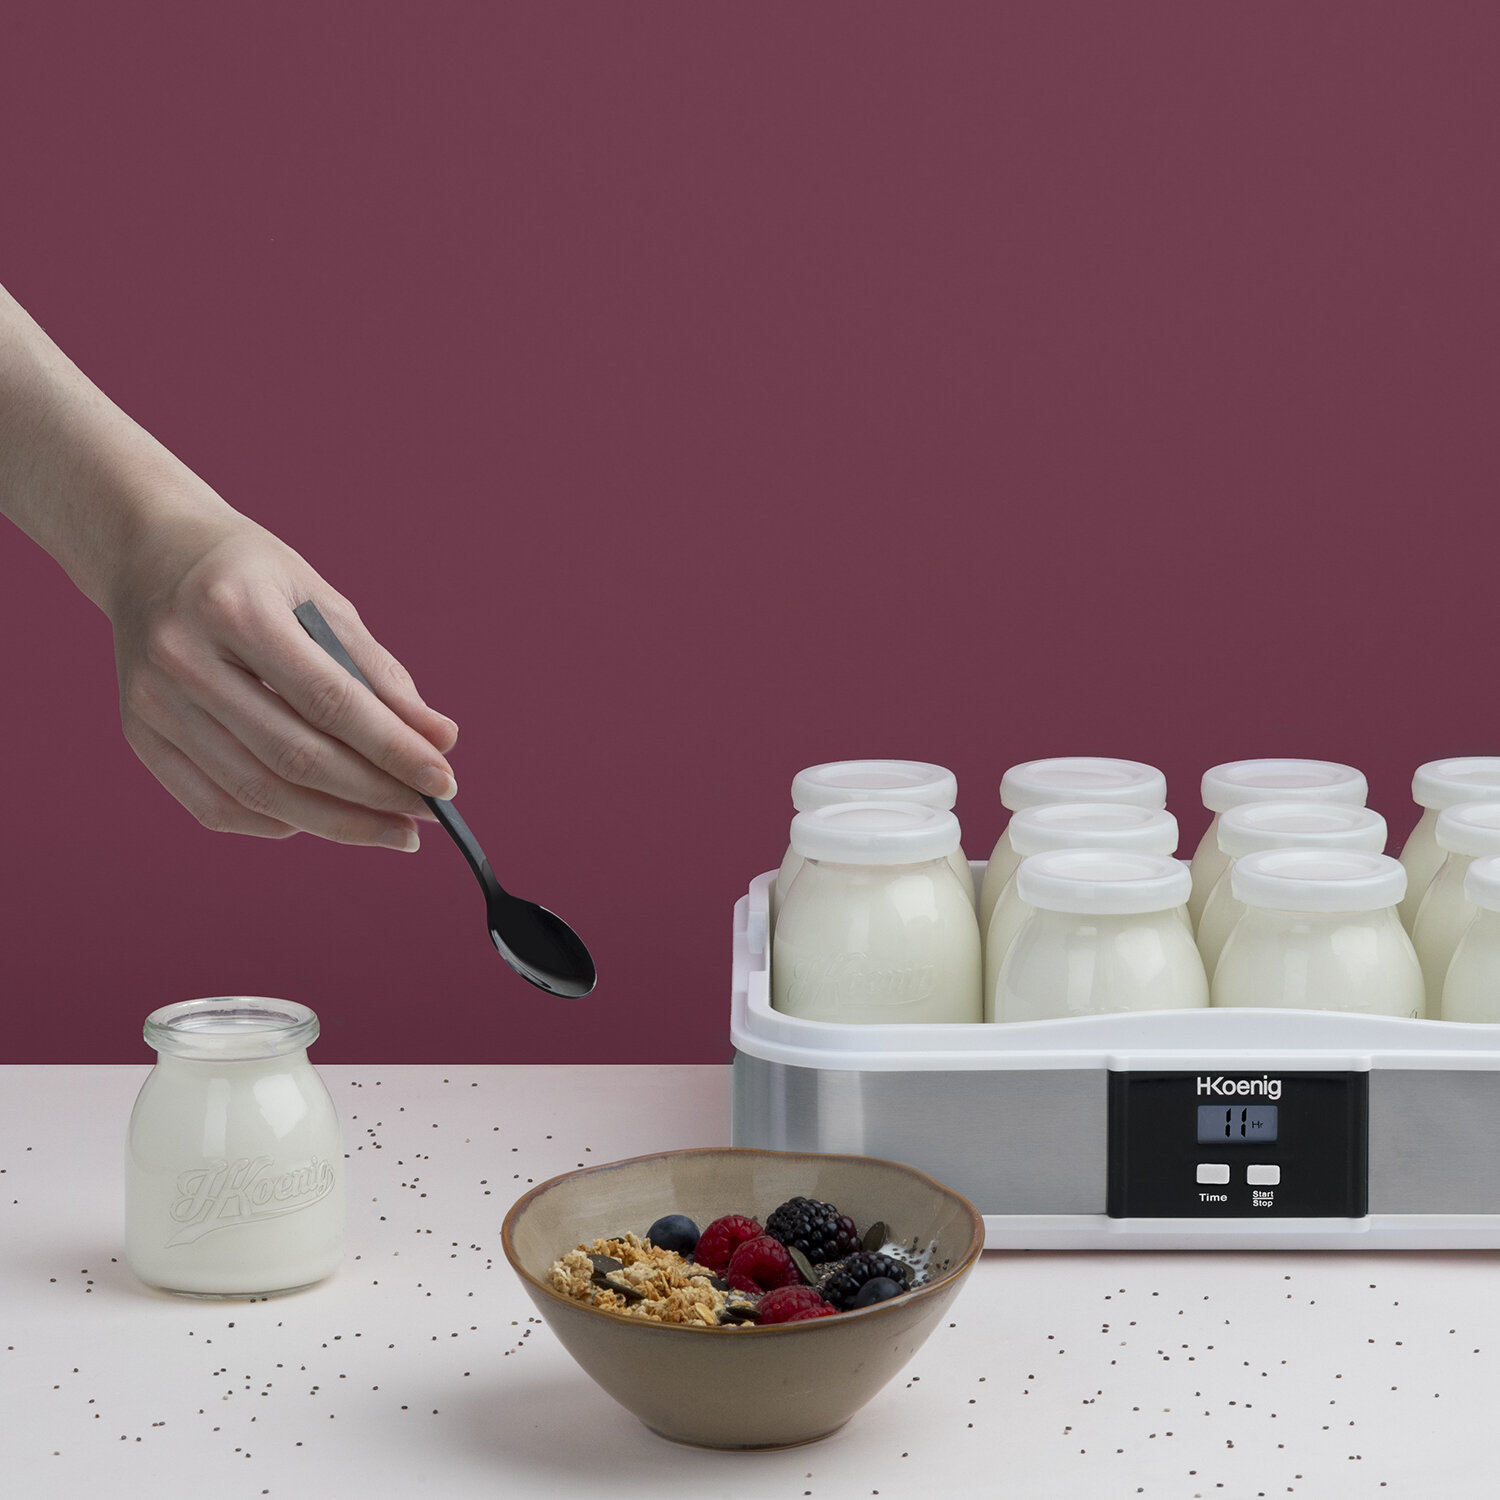 Recetas de tartas y bizcochos con yogur, salsas o ensaladas de verano: 33  recetas con yogur casero que podemos hacer con estas nueve yogurteras